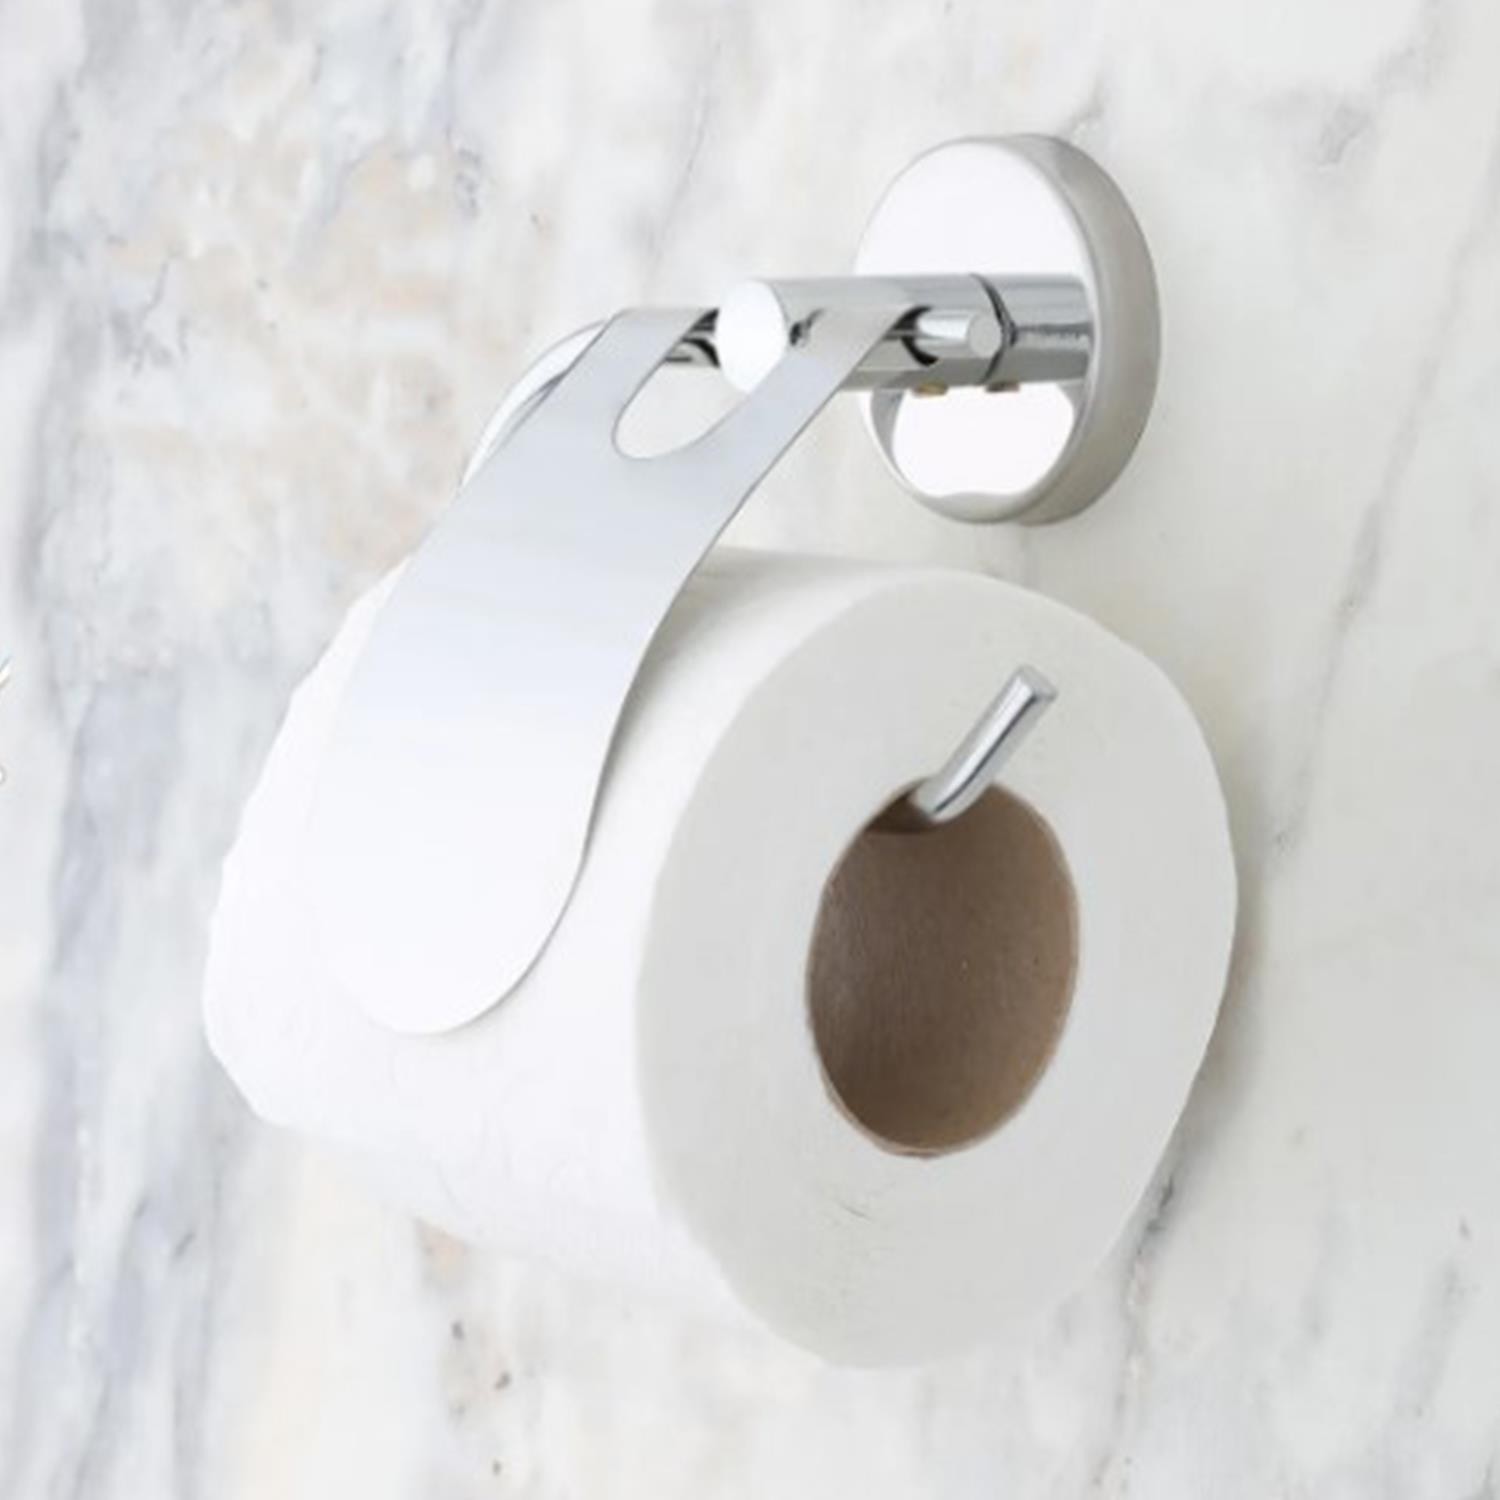 Yapışkanlı Tuvalet Kağıtlık Aparat Kapalı WC Kağıt Standı Bez Havluluk Paslanmaz Metal Sağlam Krom